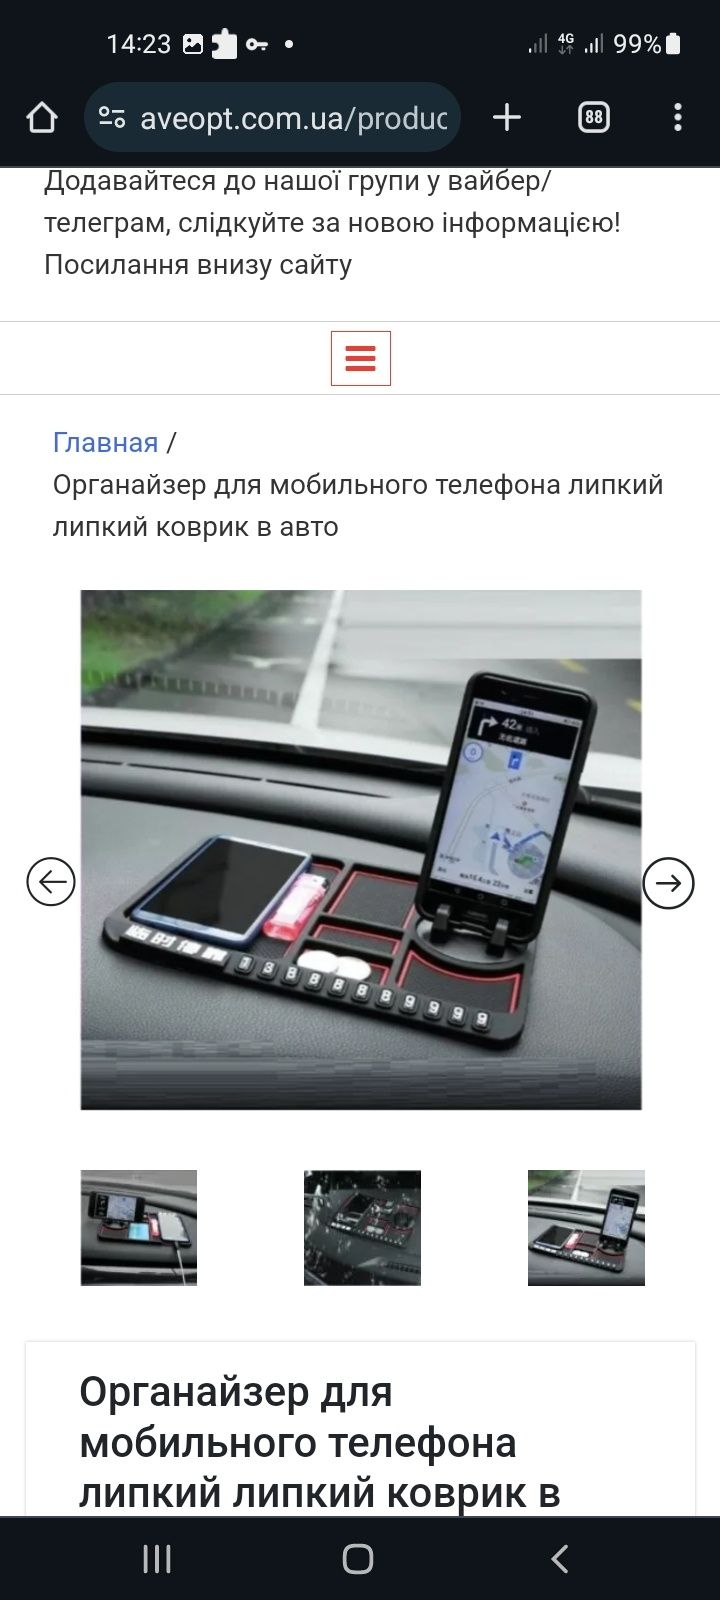 Органайзер для мобильного телефона липкий липкий коврик в авто